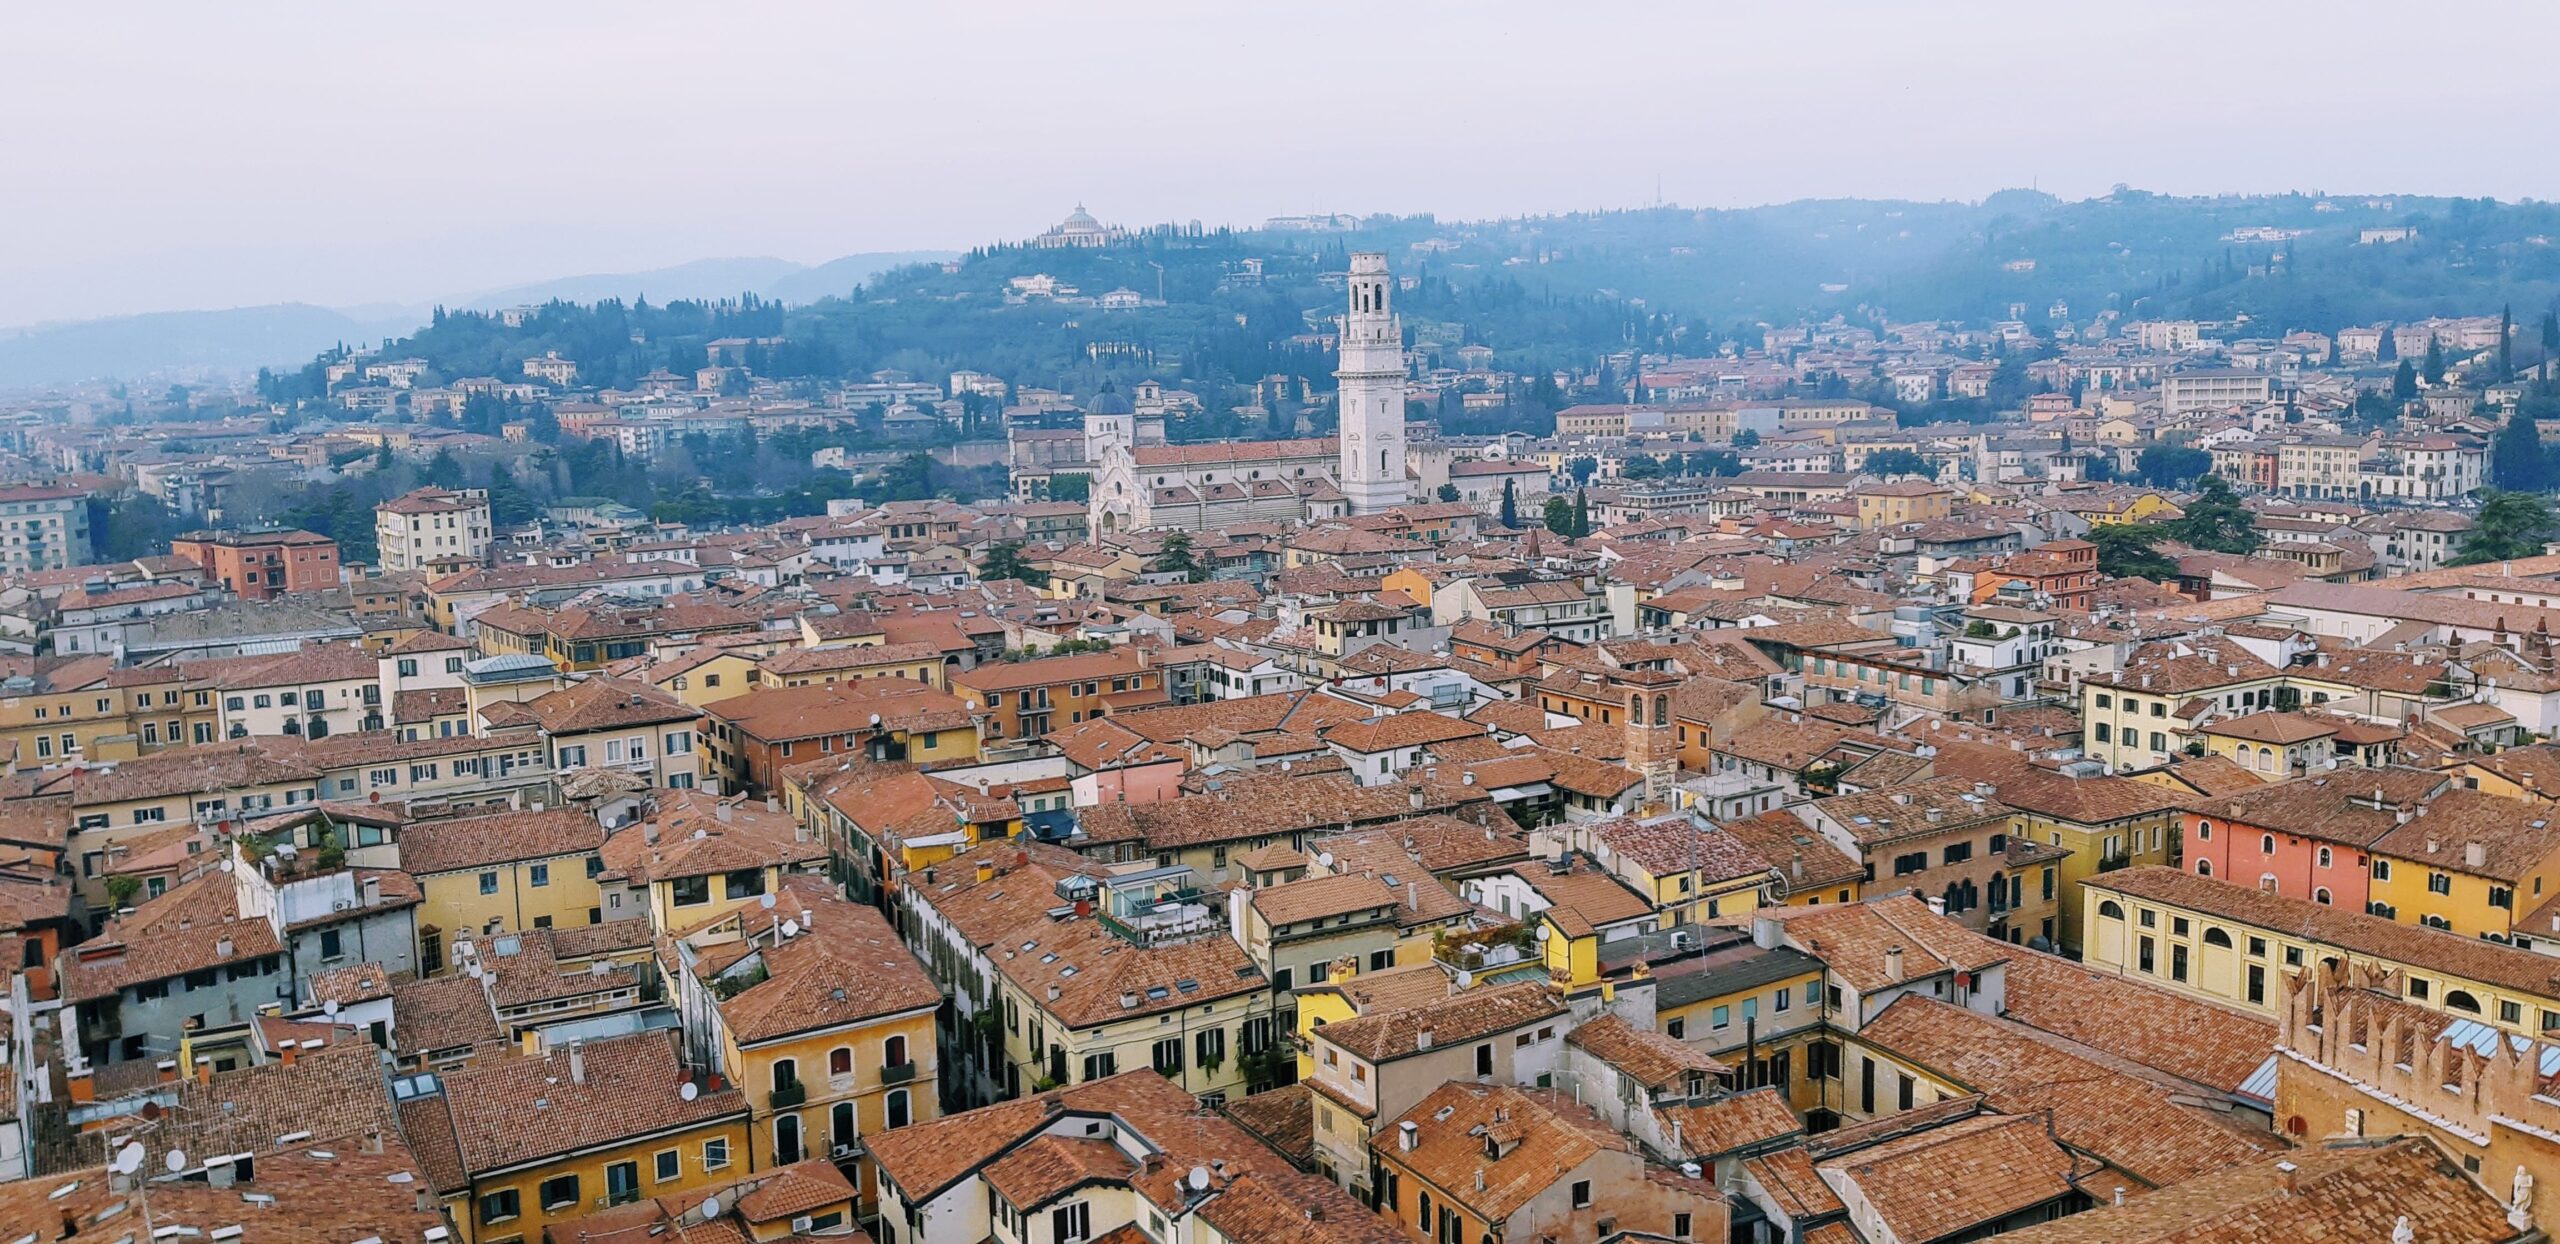 Visuale della città da torre dei Lamberti a Verona